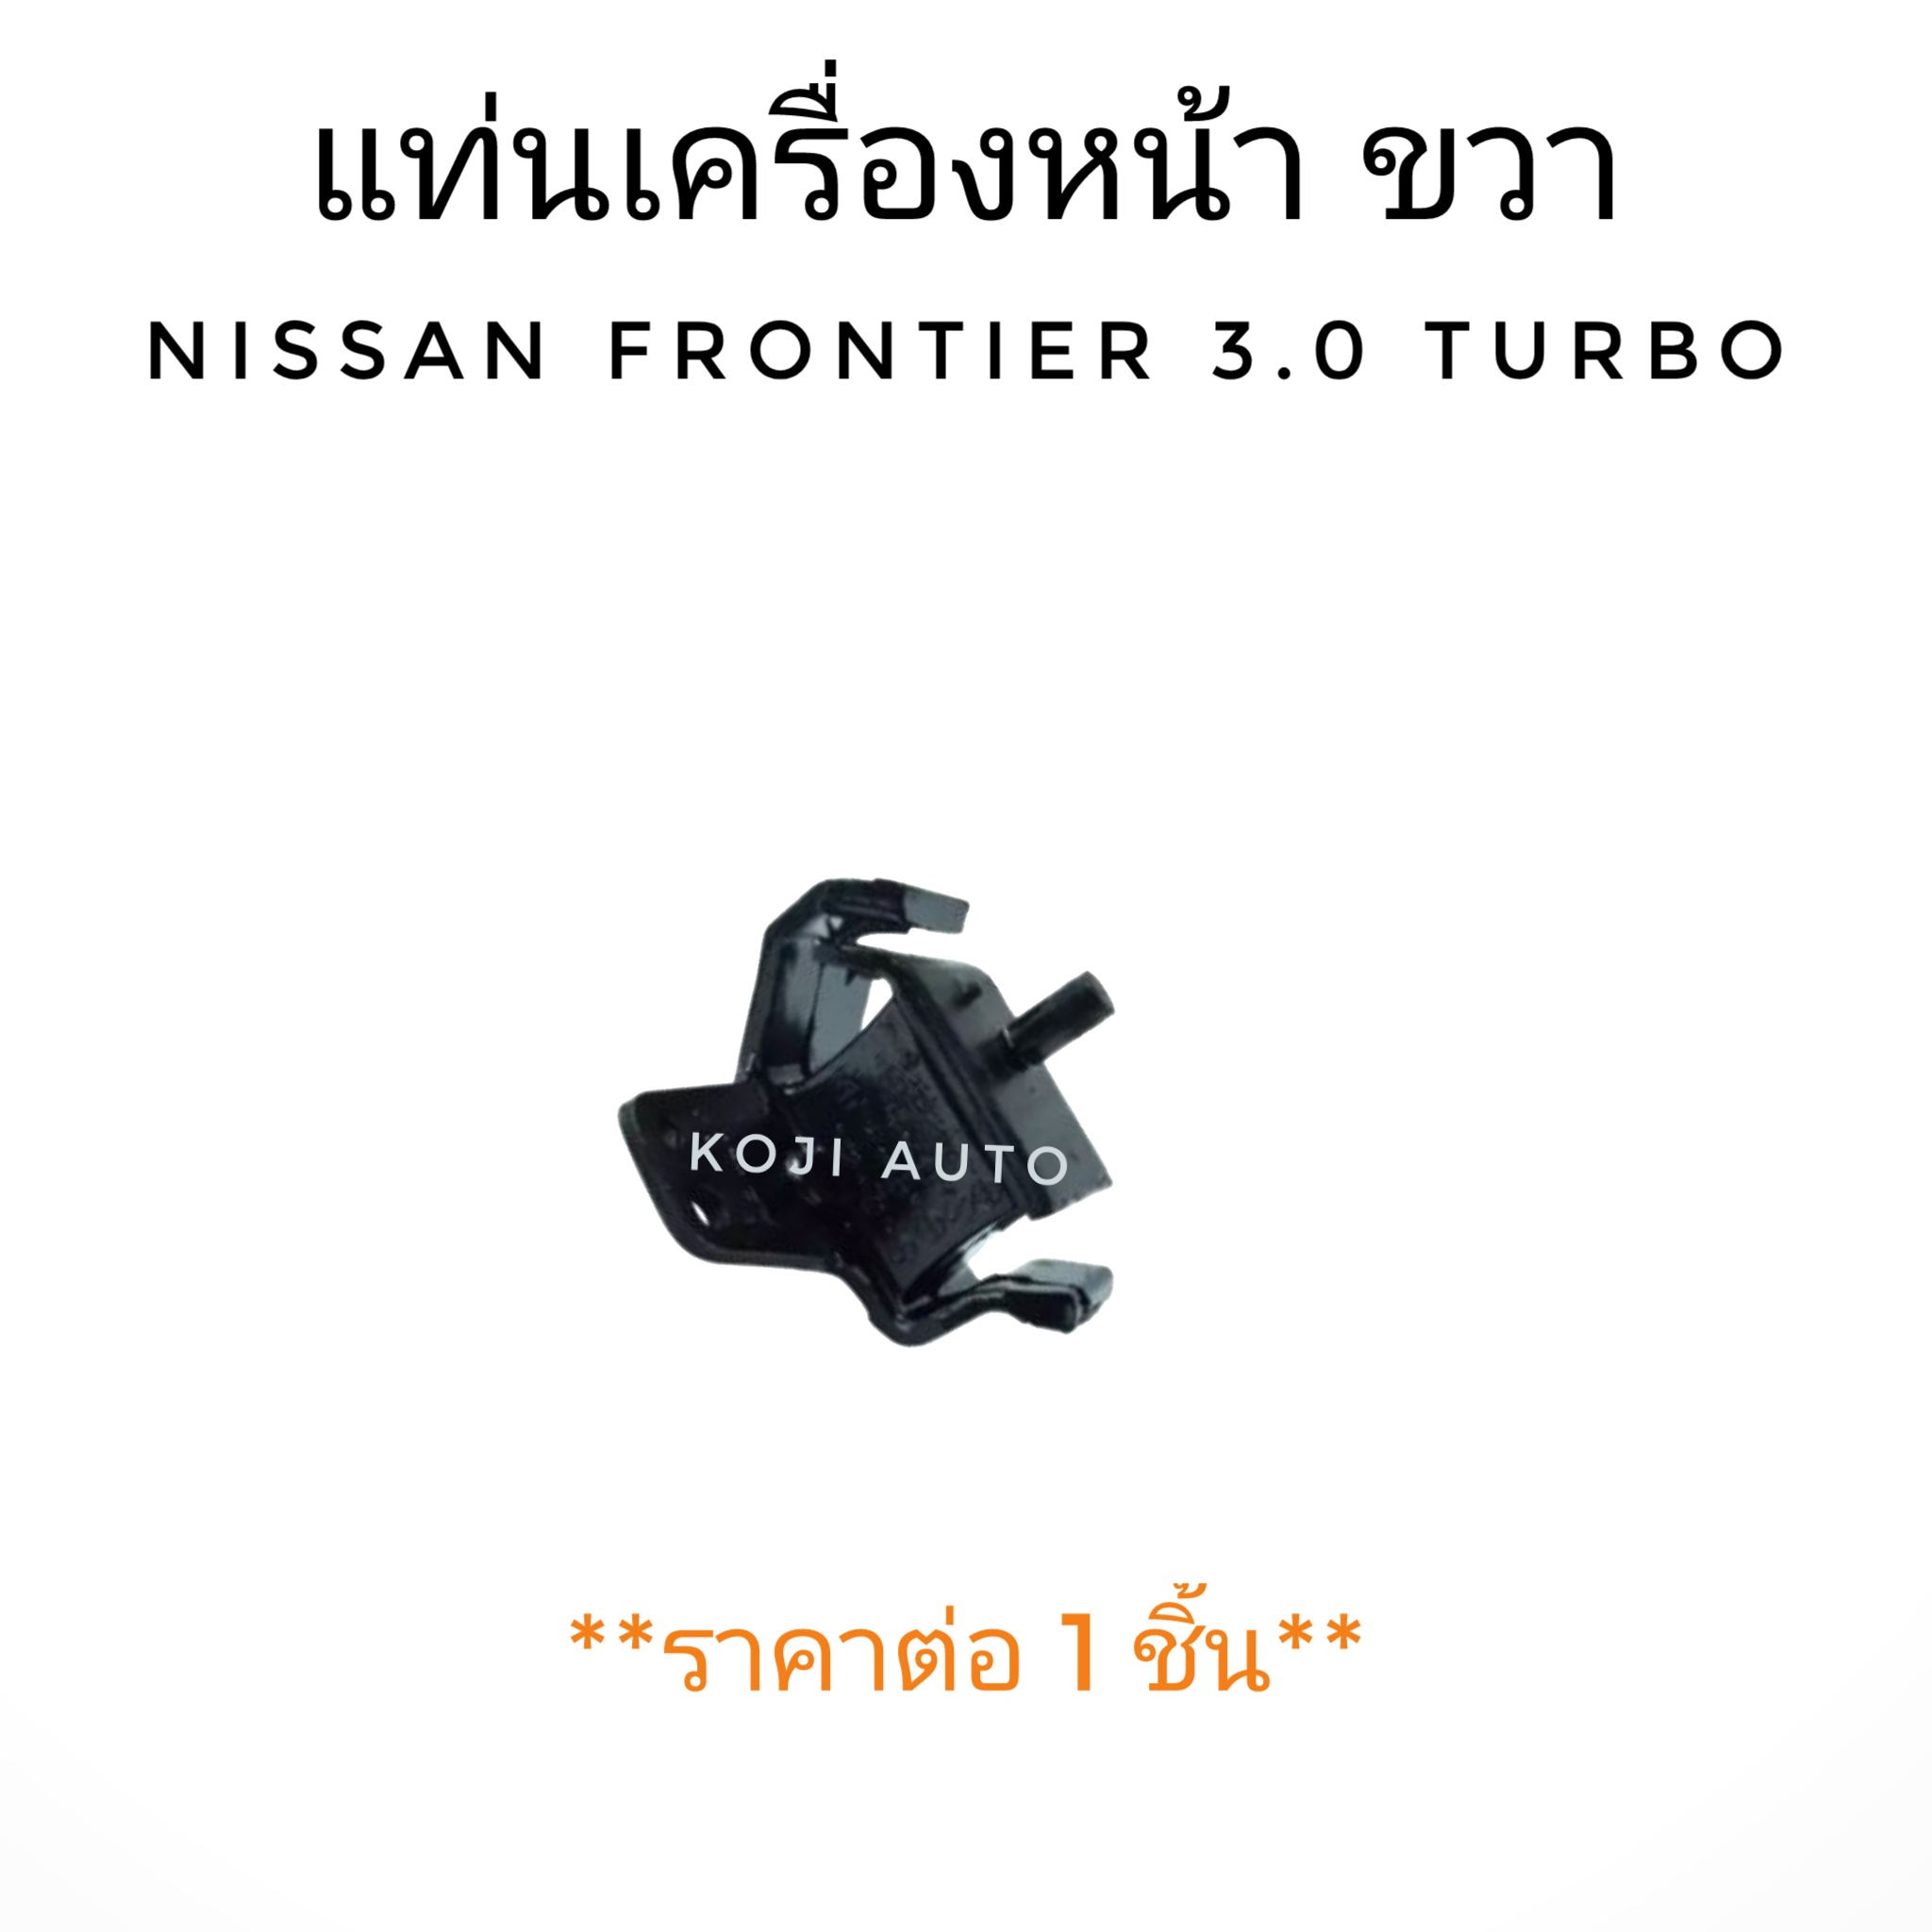 ยางแท่นเครื่องหน้า ขวา Nissan Frontier 3.0 Turbo (1 ชิ้น)